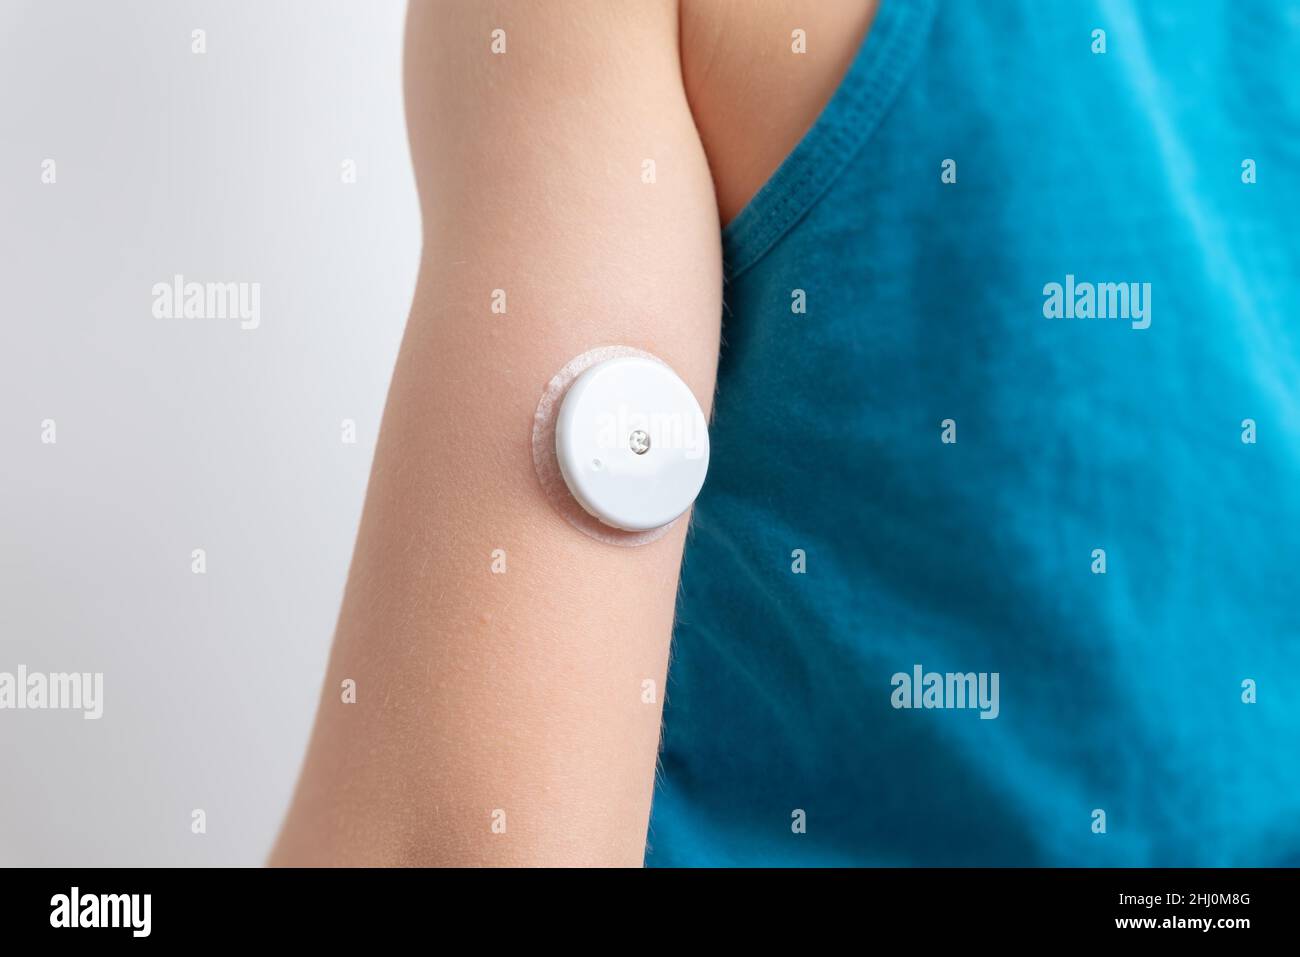 Blutzuckersensor am Arm eines Kindes. Sensor zur Fernmessung des Blutzuckerspiegels mithilfe der NFC-Technologie auf einem Mobiltelefon oder Lesegerät Stockfoto